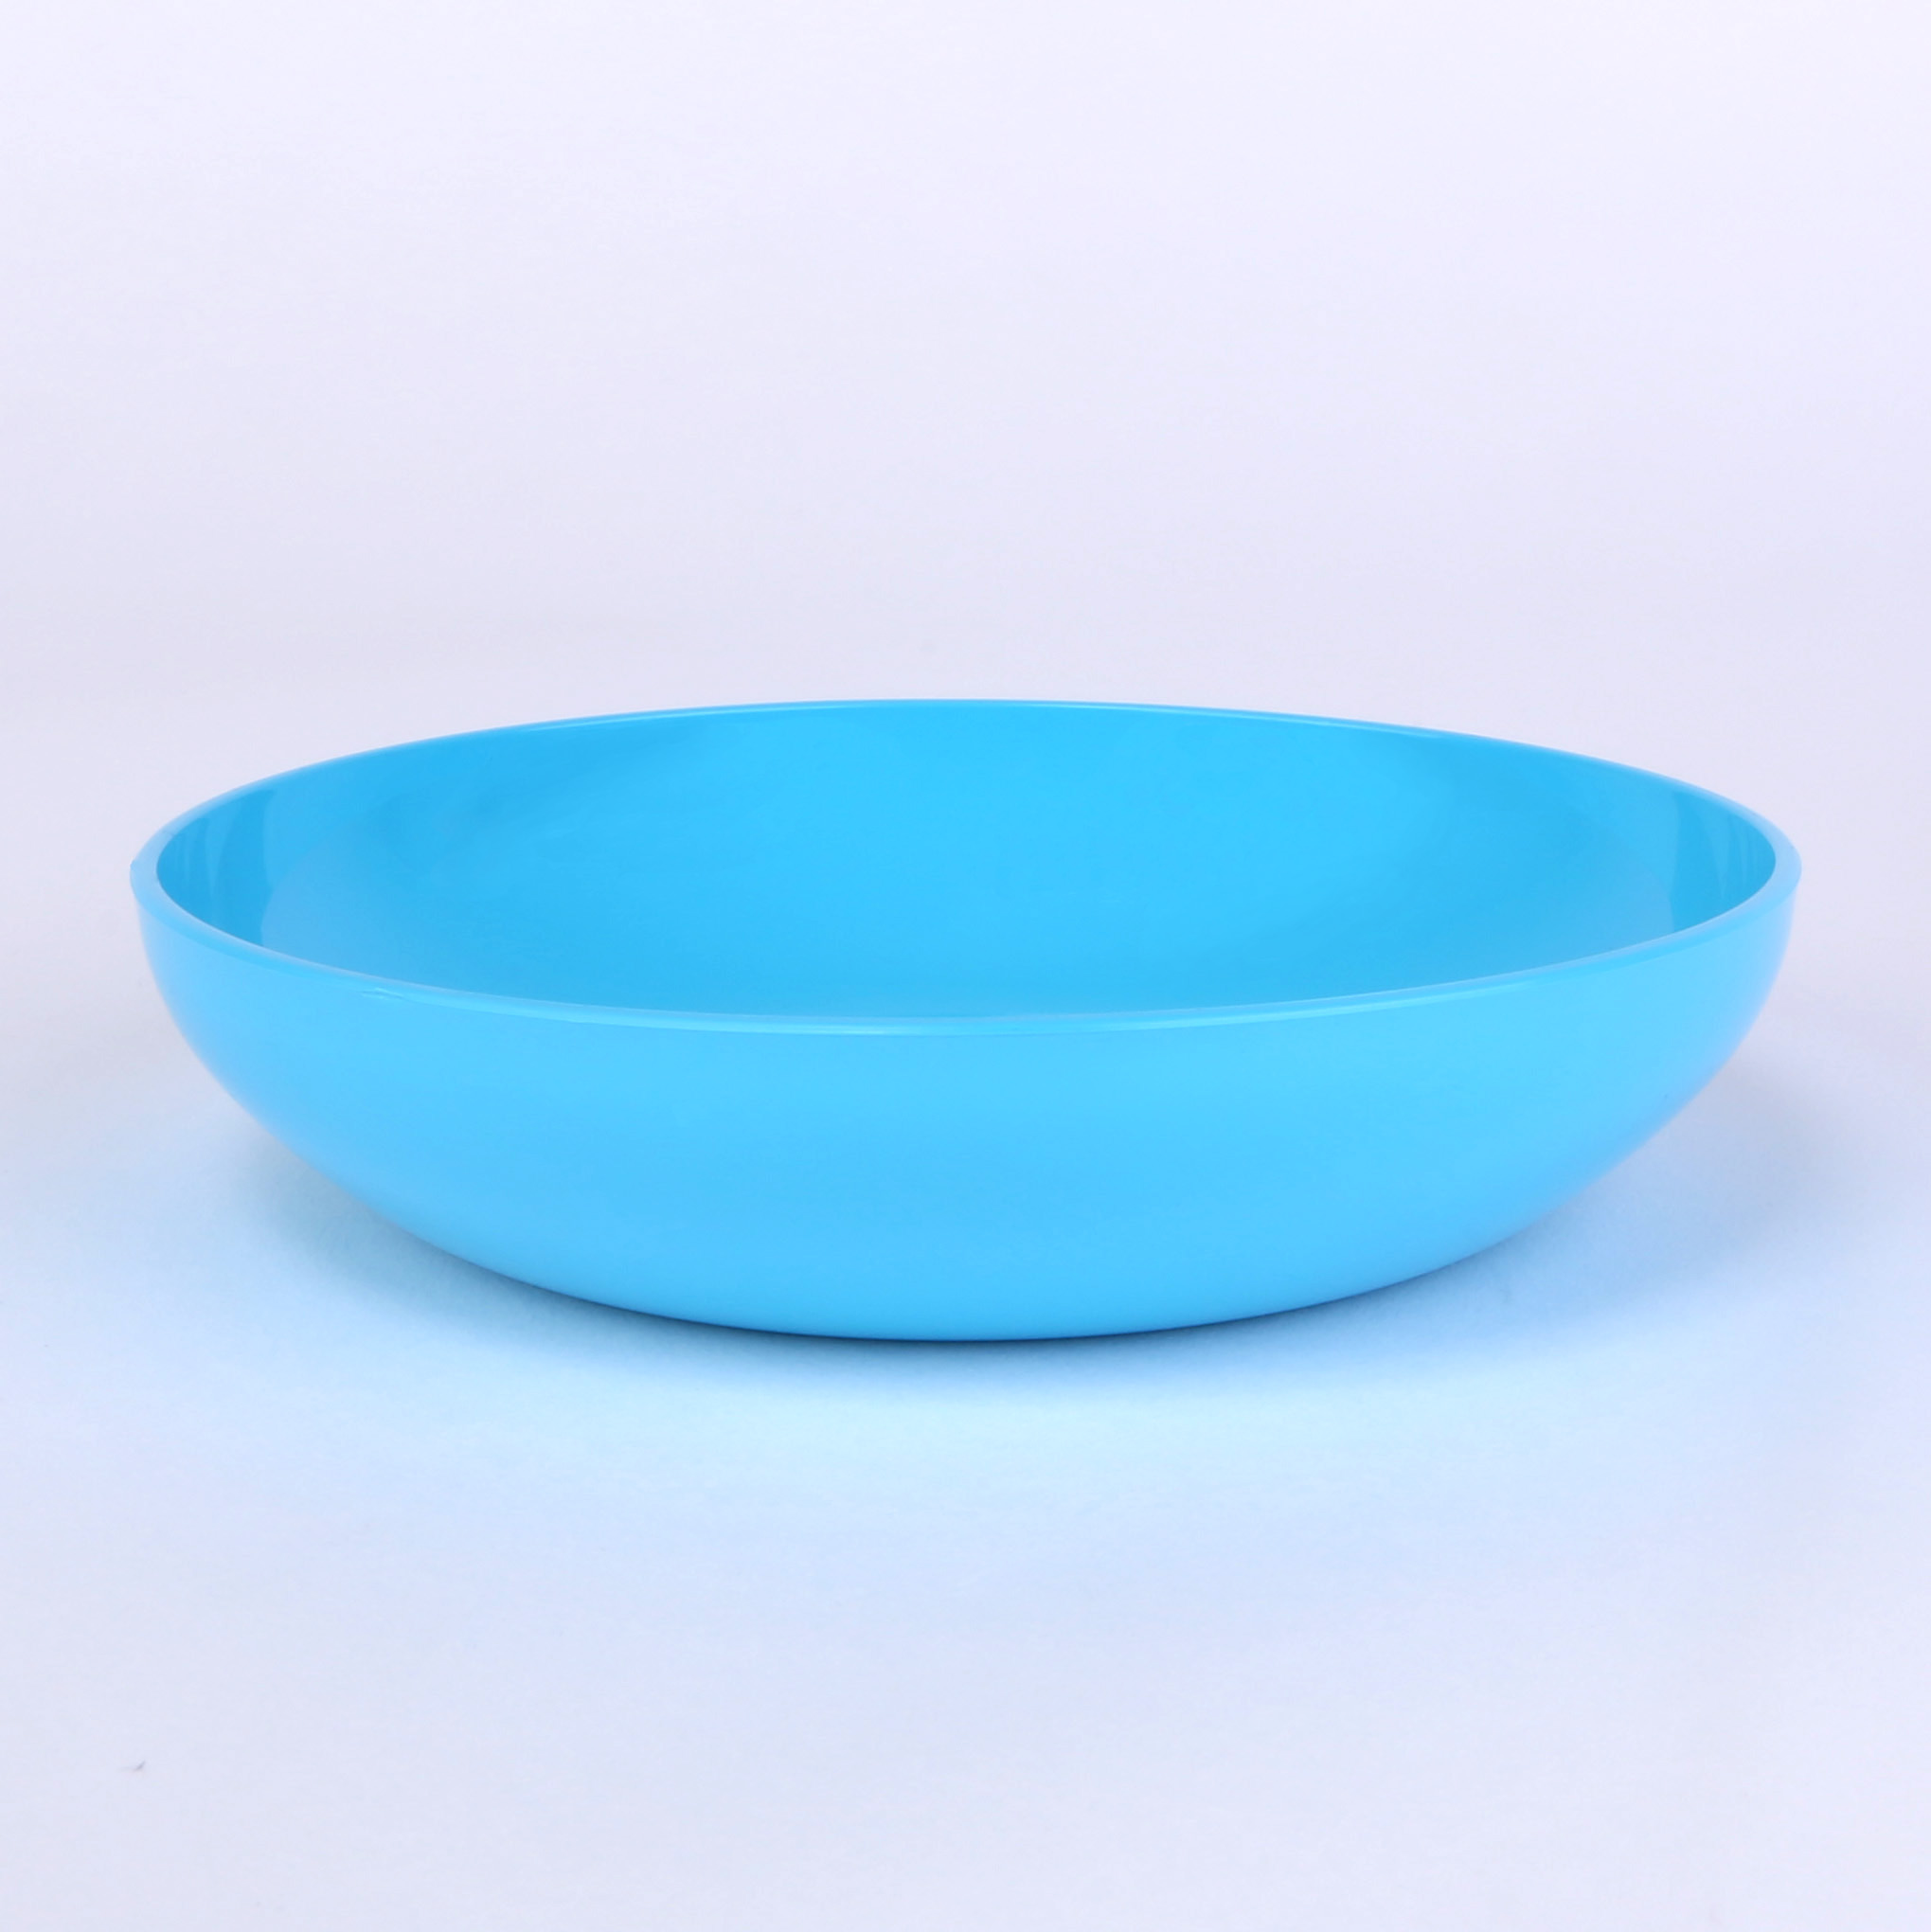 vaLon Flache Dessertschale 13,5 cm aus schadstofffreiem Kunststoff in der Farbe blau.